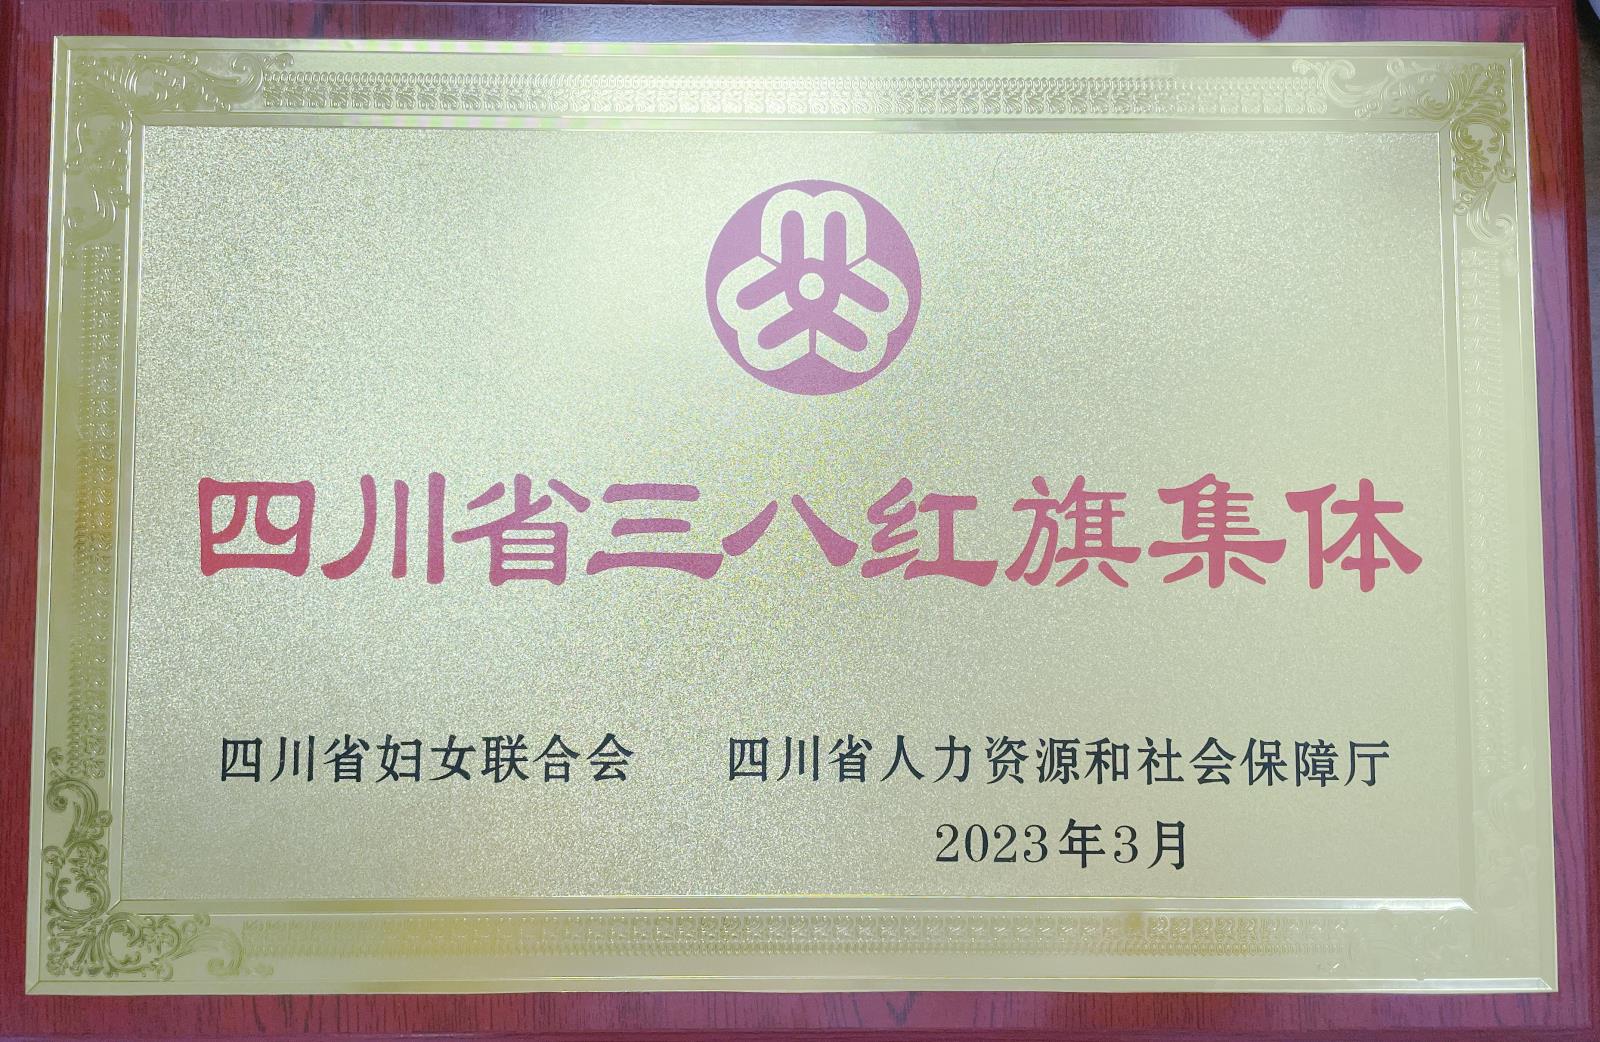 【喜讯】我院儿科获得四川省三八红旗集体荣誉称号